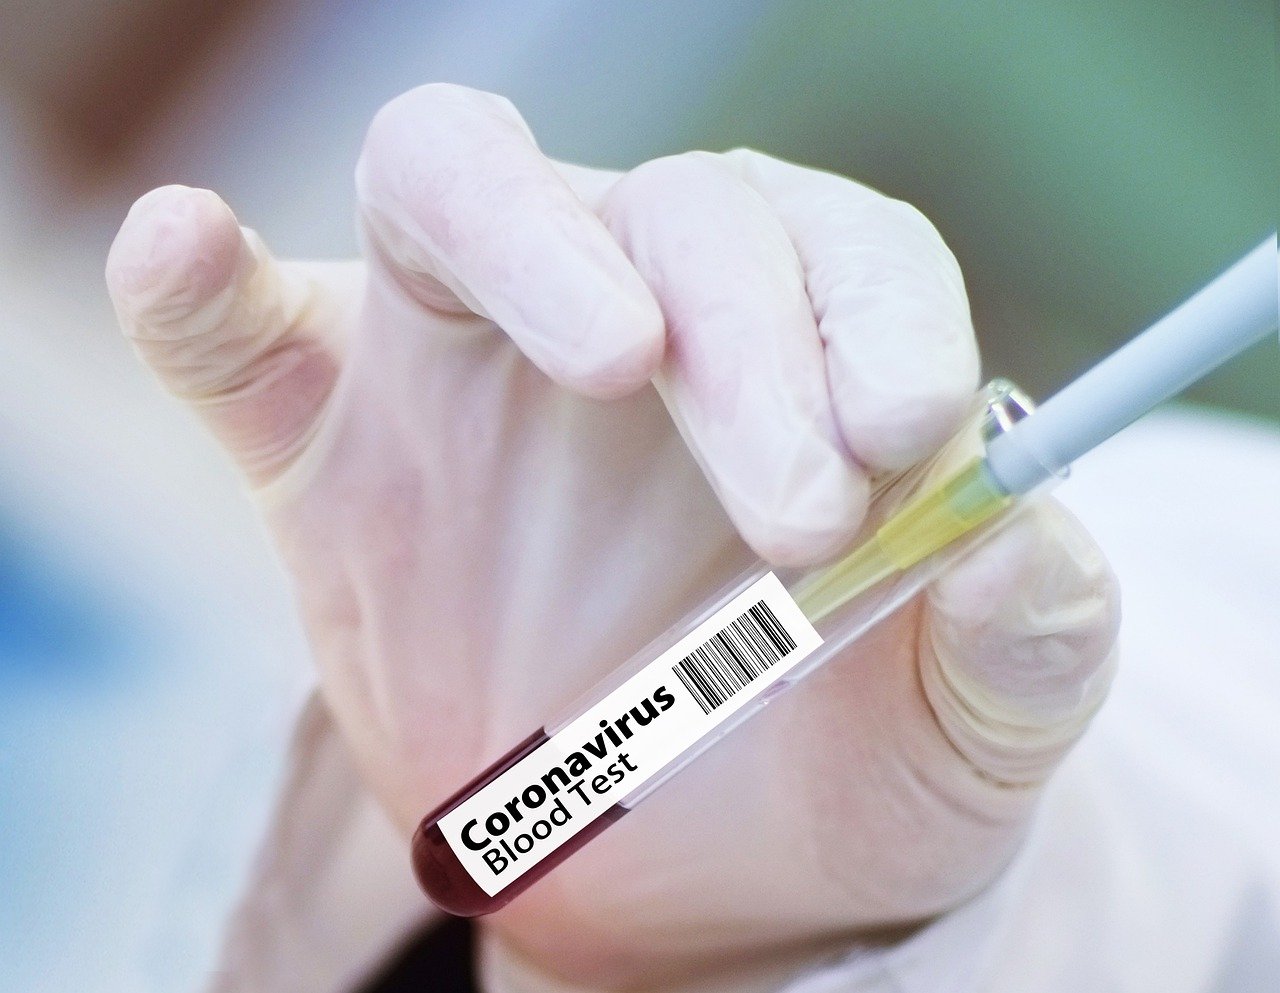 Pfizer coronavirus vaccine